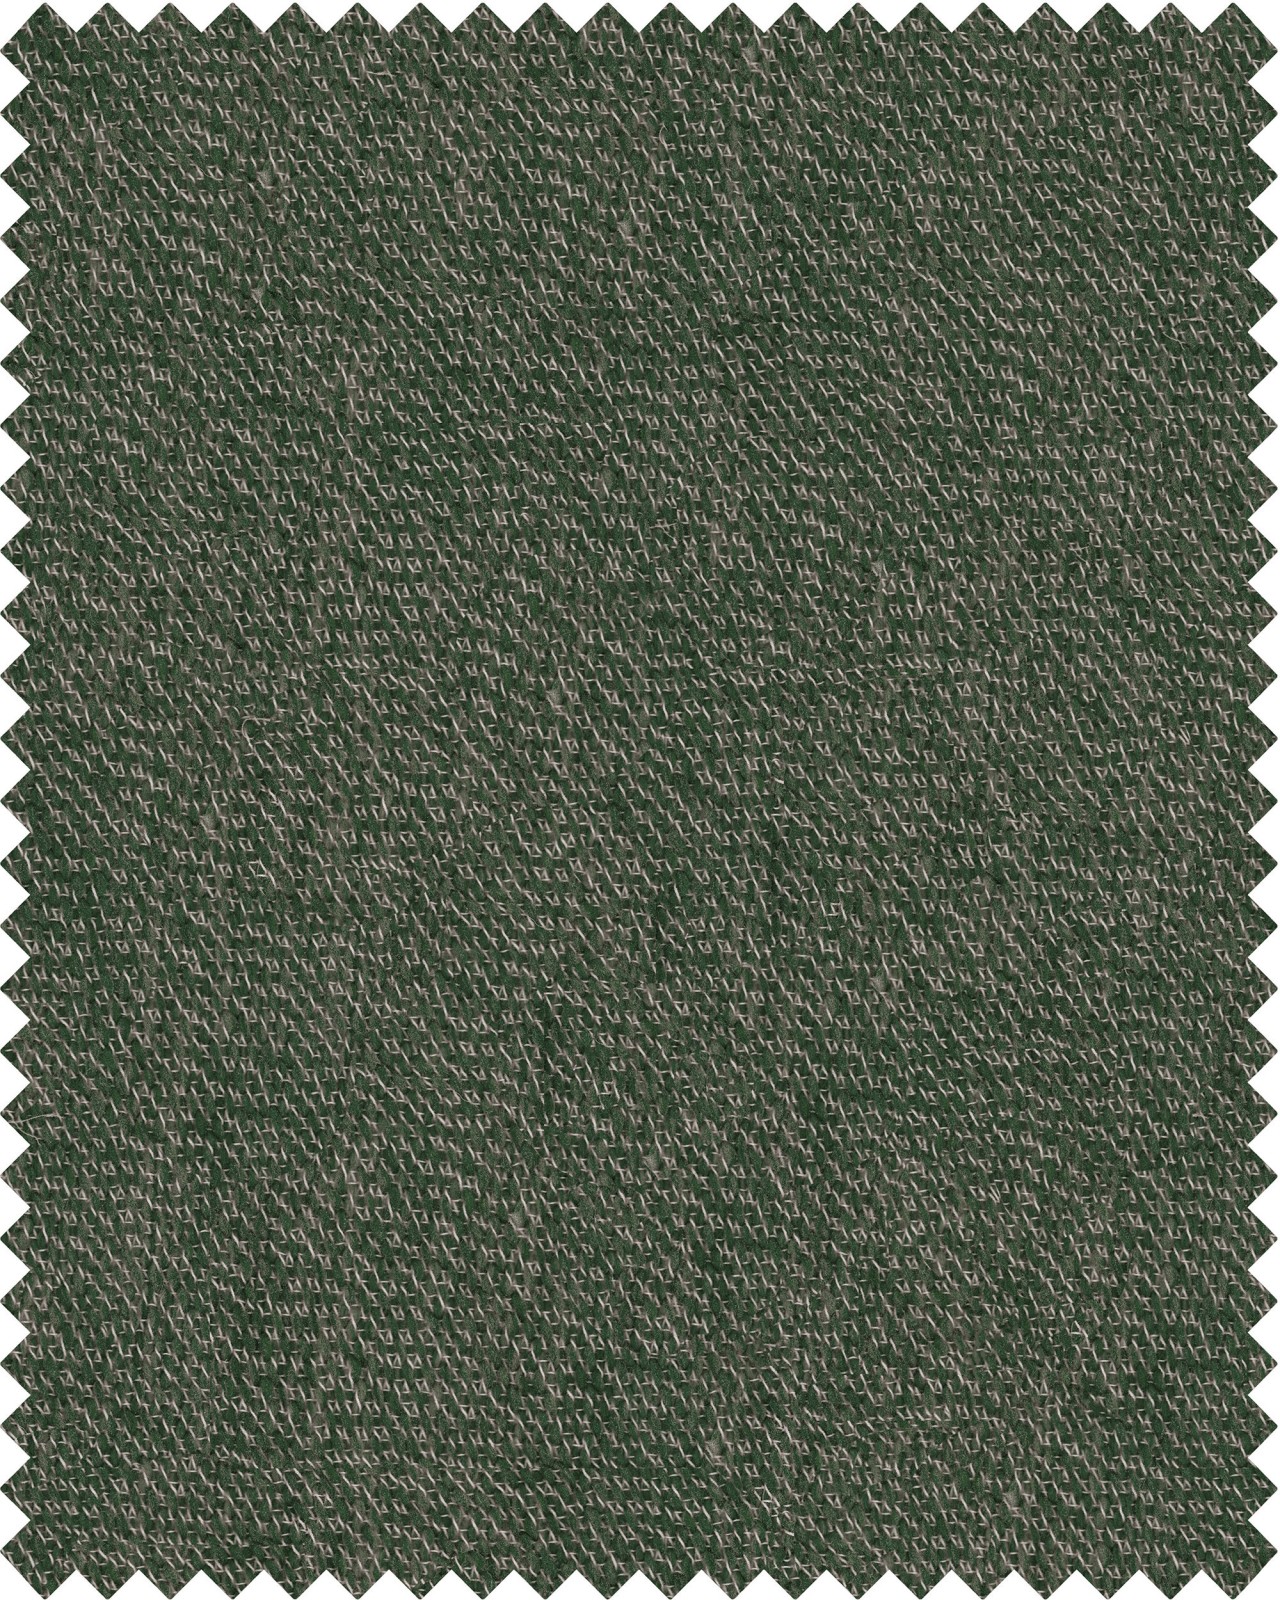 GRÜNER BAUM Woven Fabric